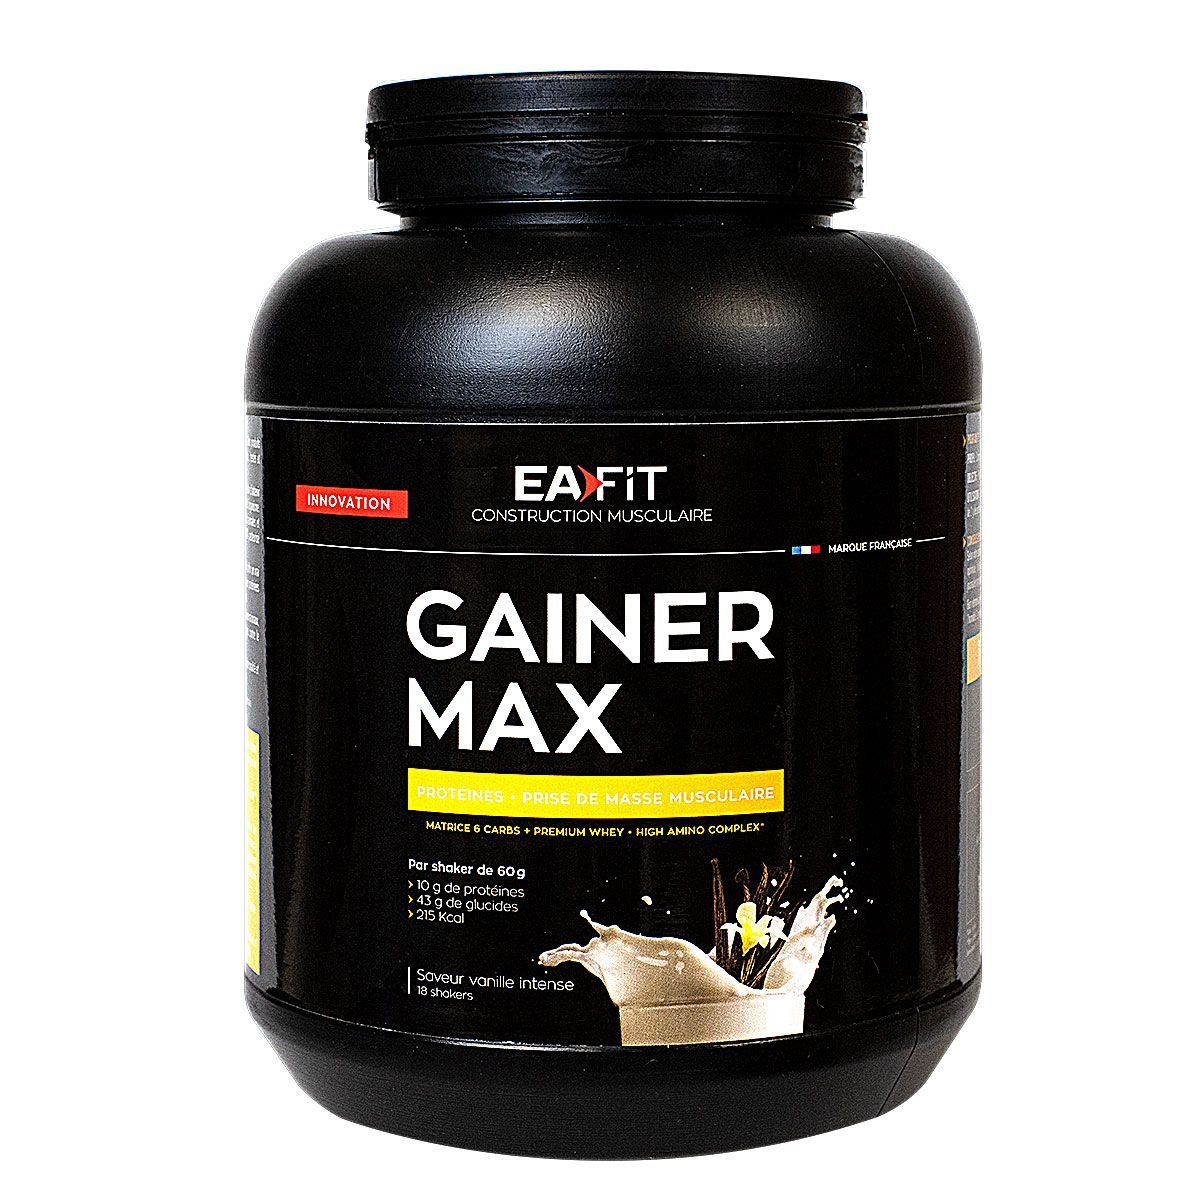 Gainer Max Eafit favorise la prise de masse musculaire.